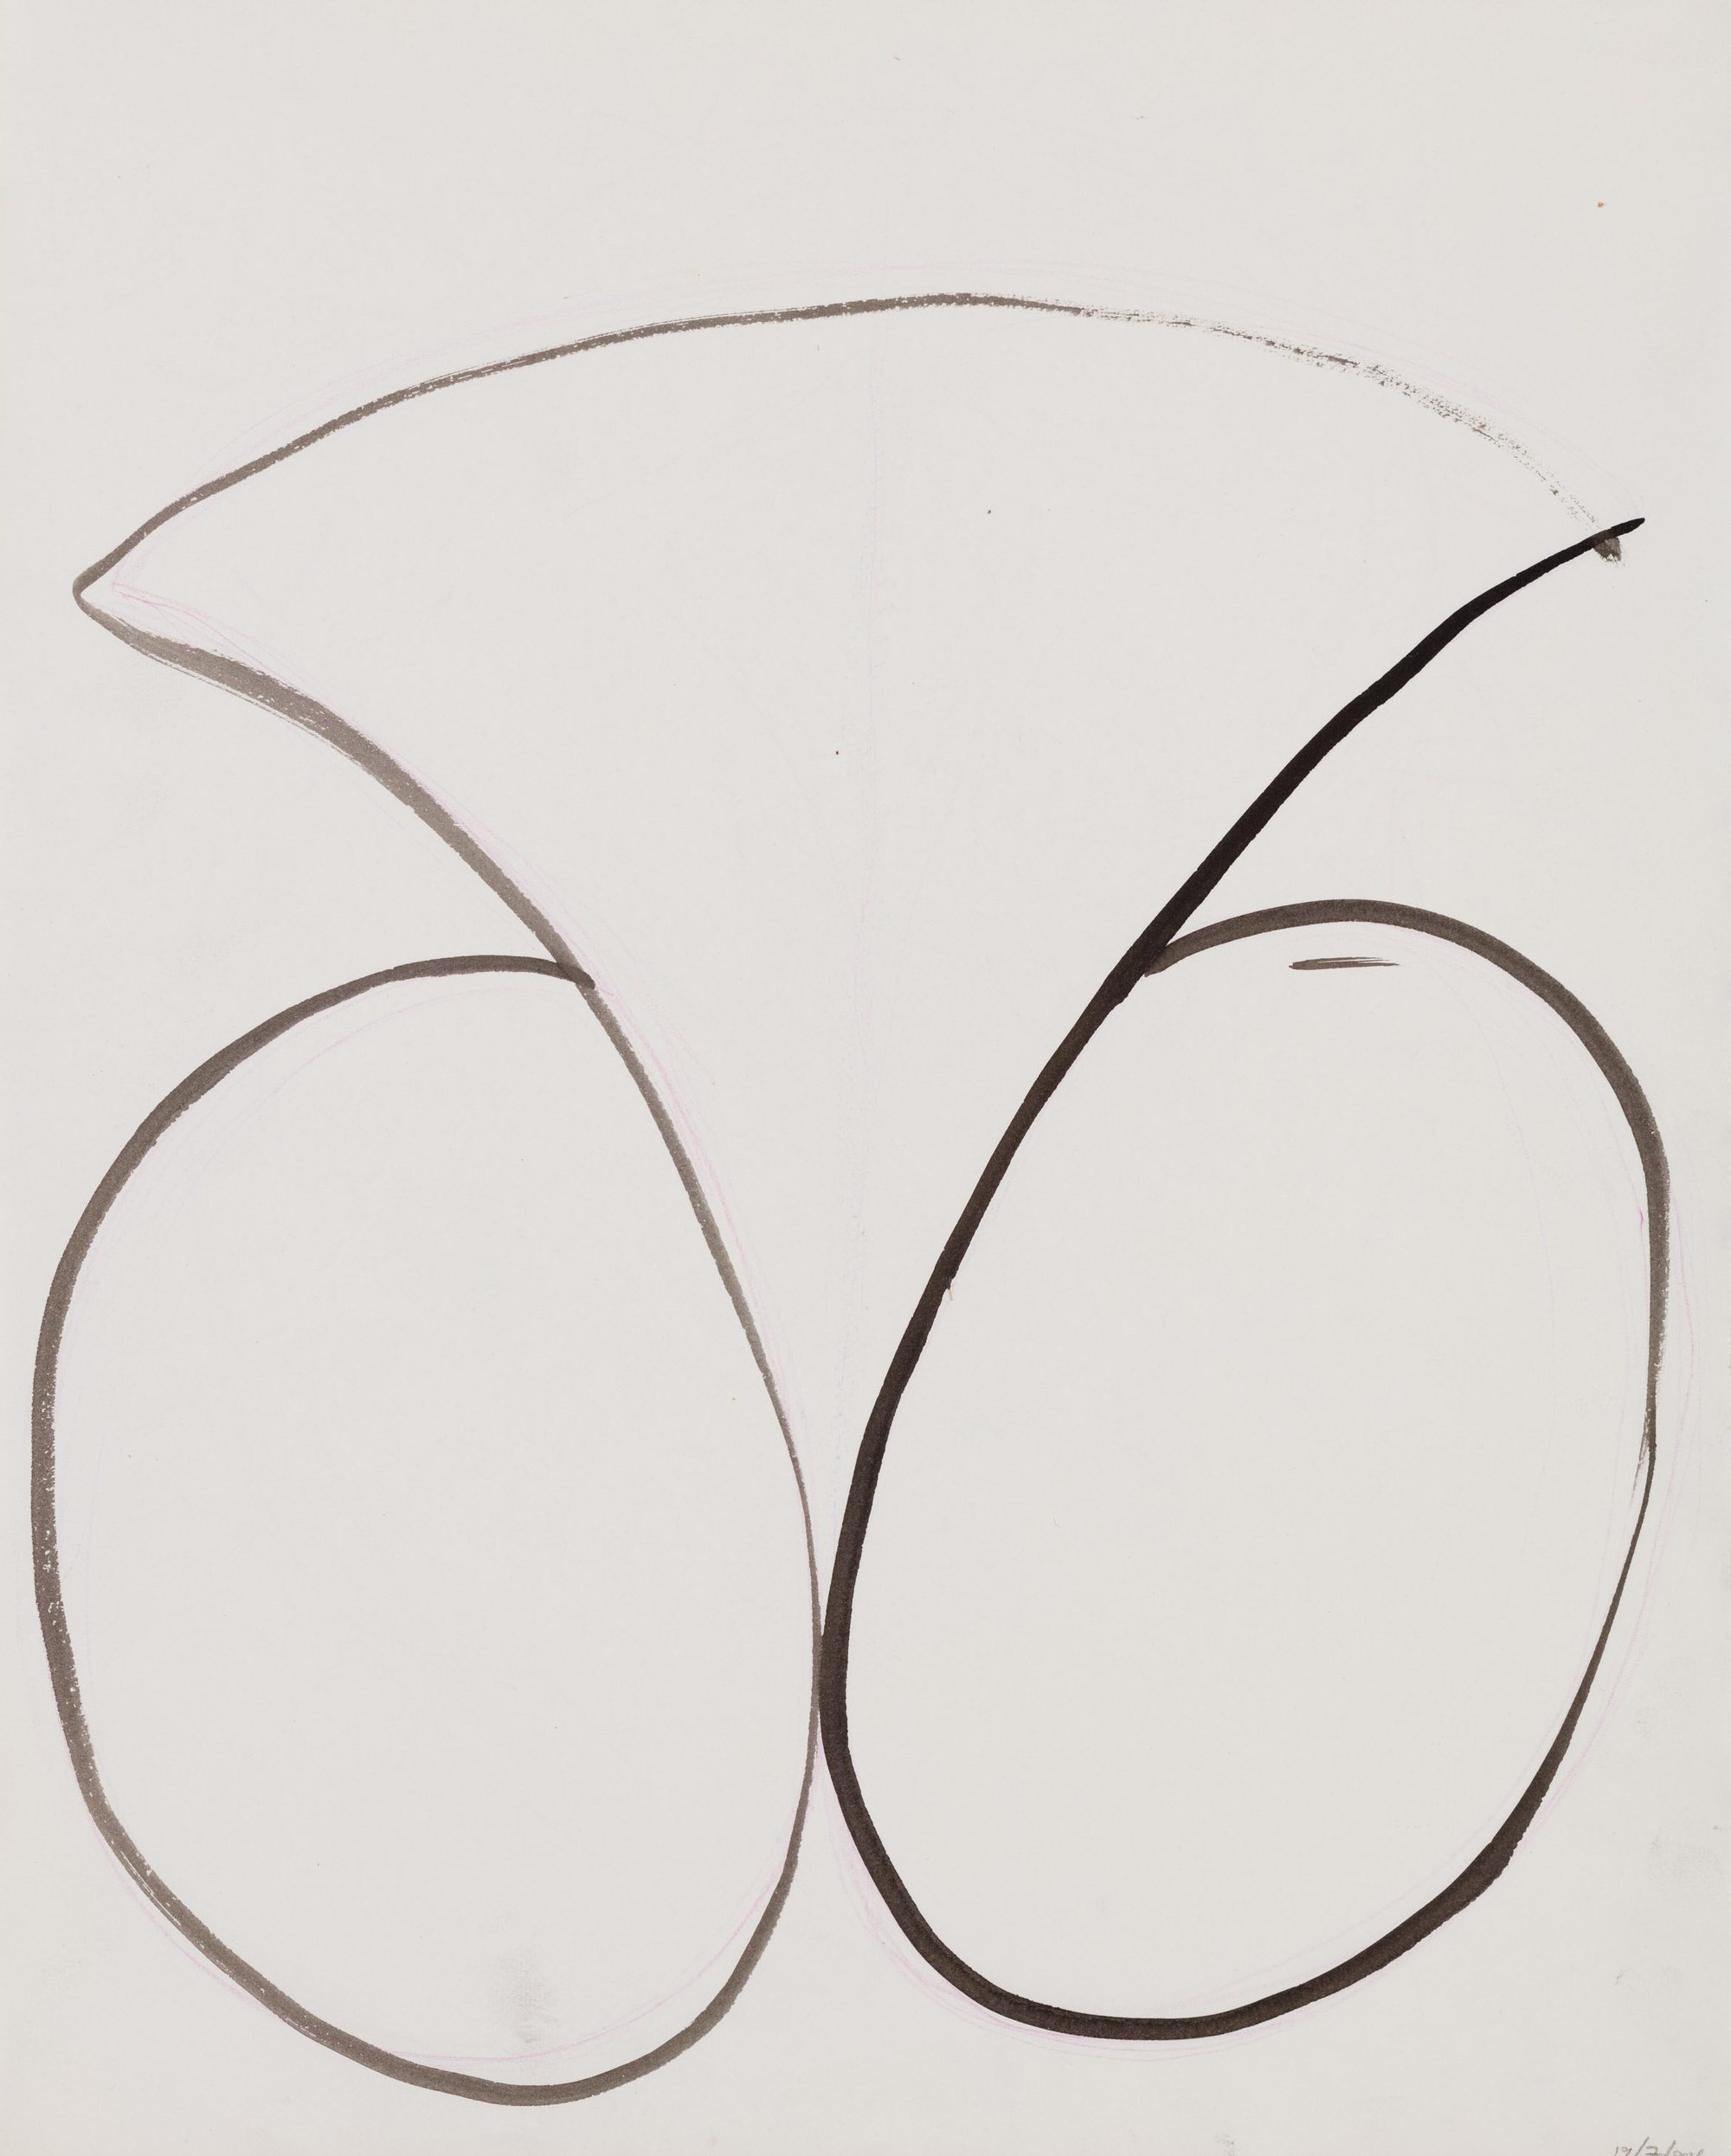 Liliane Lijn, Sketch for She, detail, india ink on paper, 48.5 x 39 cm unframed (19 1/8 x 15 3/8 in unframed), 1985